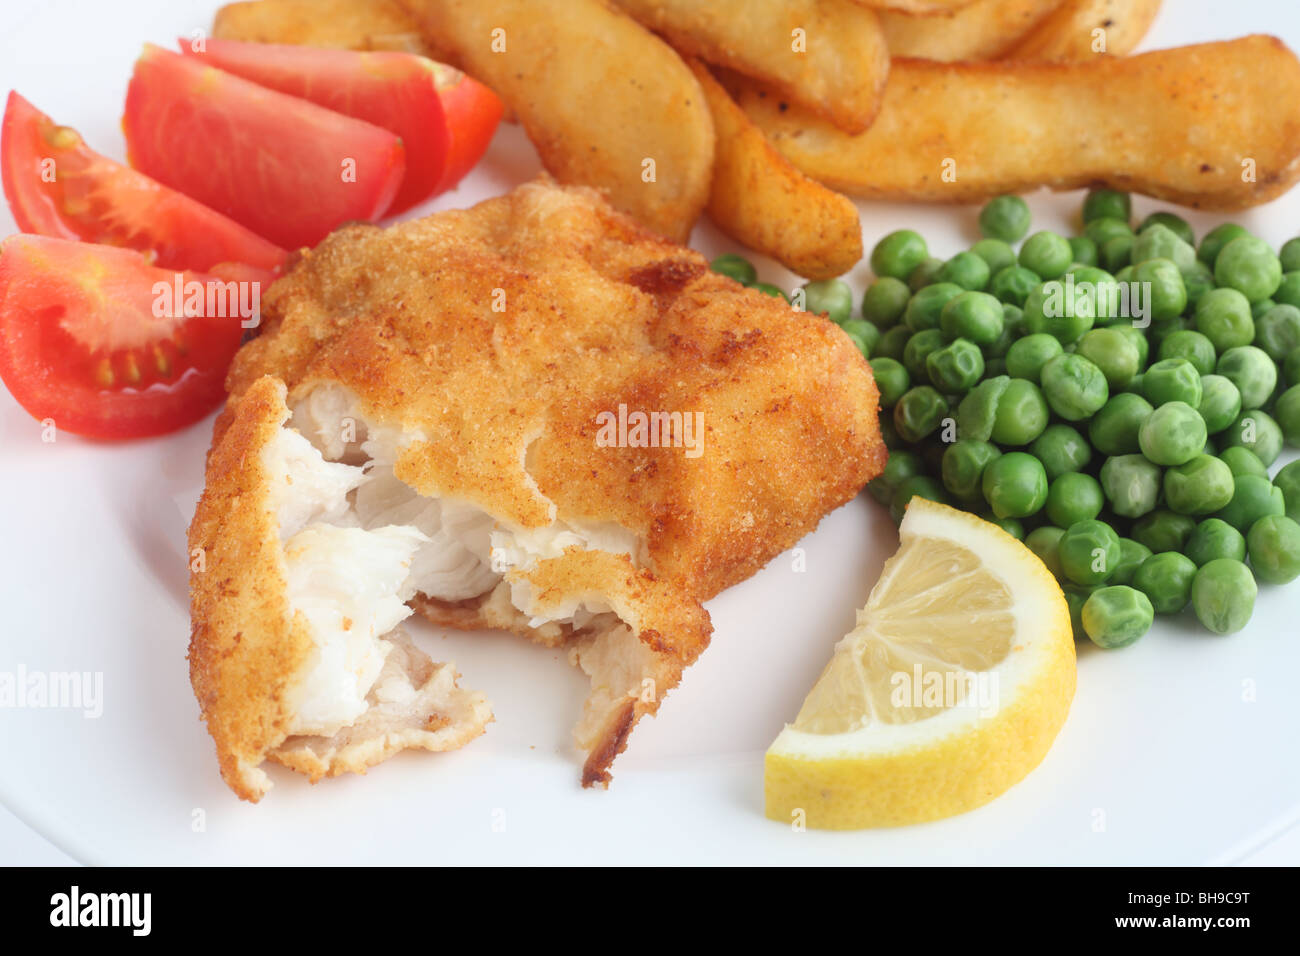 Eine Mahlzeit aus einem panierte weißen Fischfilet mit klobigen gebratene Kartoffelspalten, Erbsen, Tomaten und Zitrone Stockfoto